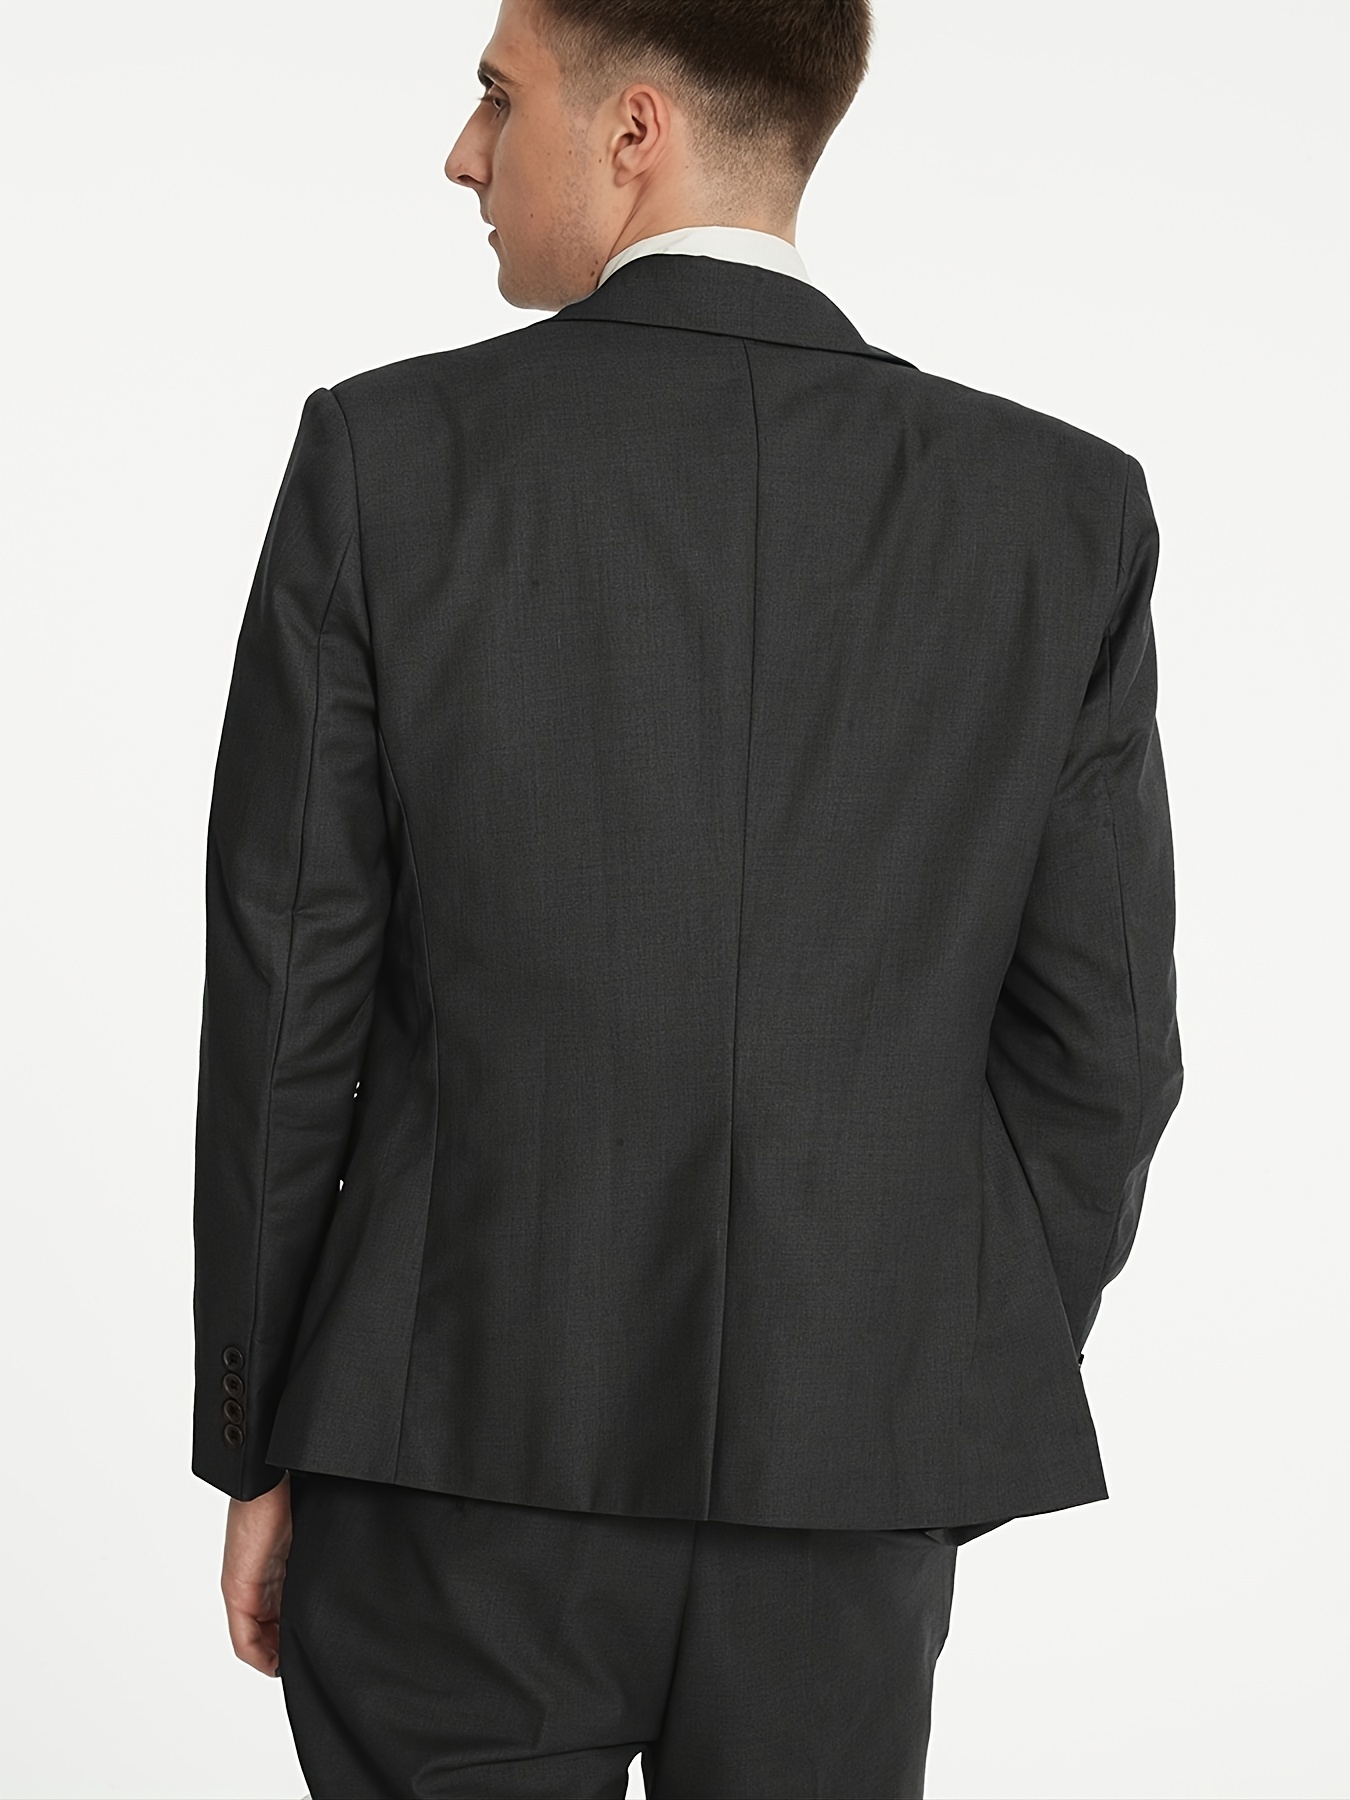  Women's 3 Piece Office Work Suit Blazer Vest Pants Business  Outfits Pants Suit Set Prom Party Suit Beige XS : Clothing, Shoes & Jewelry